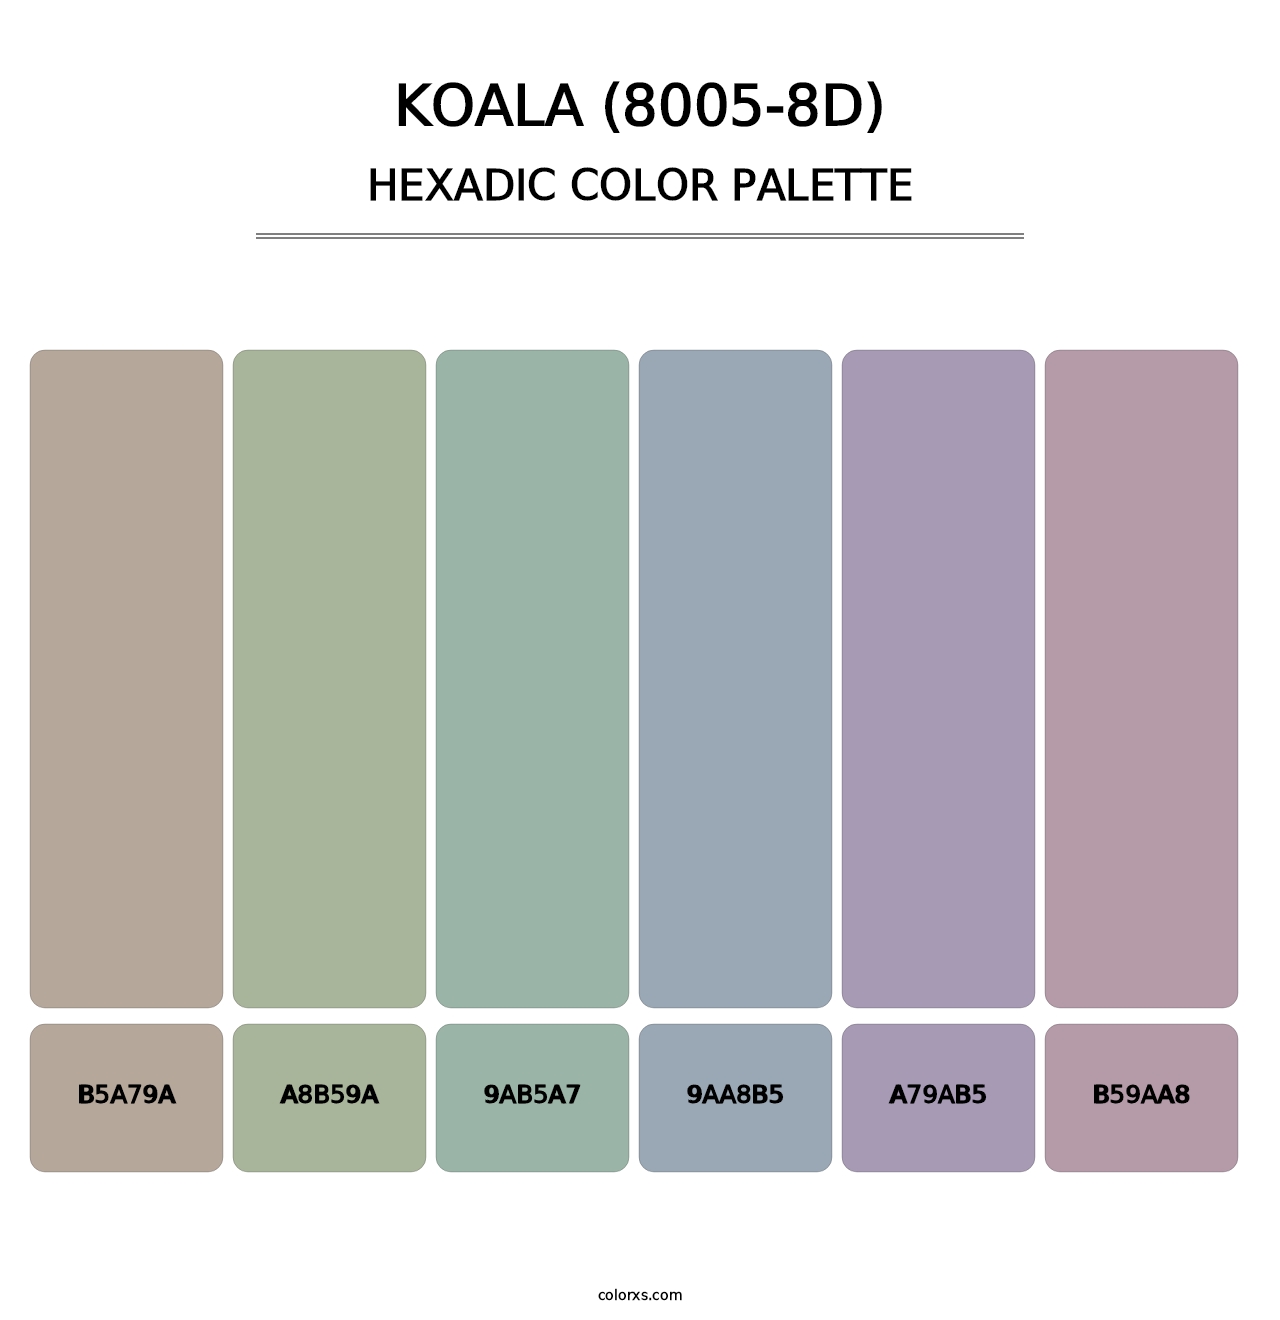 Koala (8005-8D) - Hexadic Color Palette